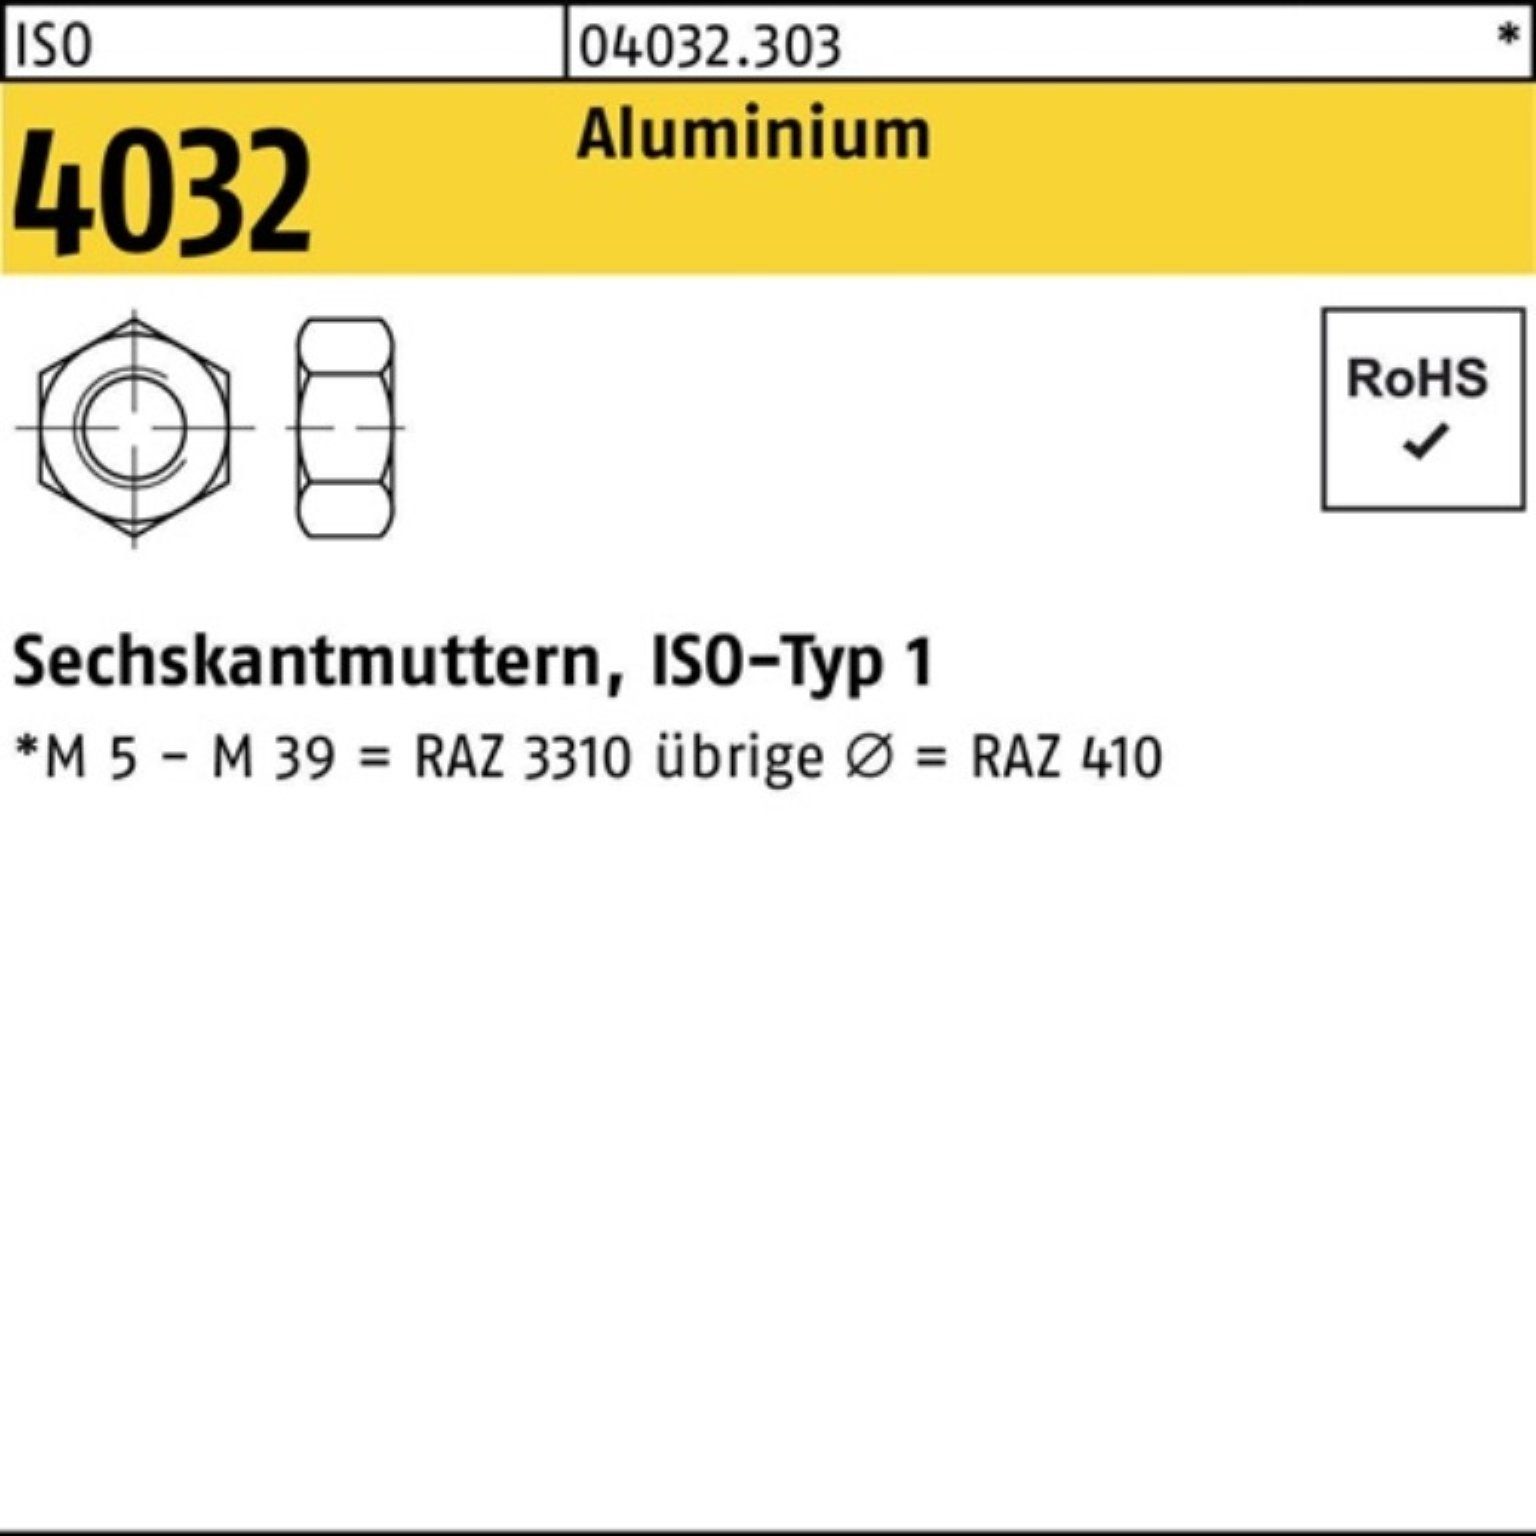 Bufab Muttern 100er 100 ISO Stück Aluminium ISO 4032 M4 A Pack 4032 Sechskantmutter